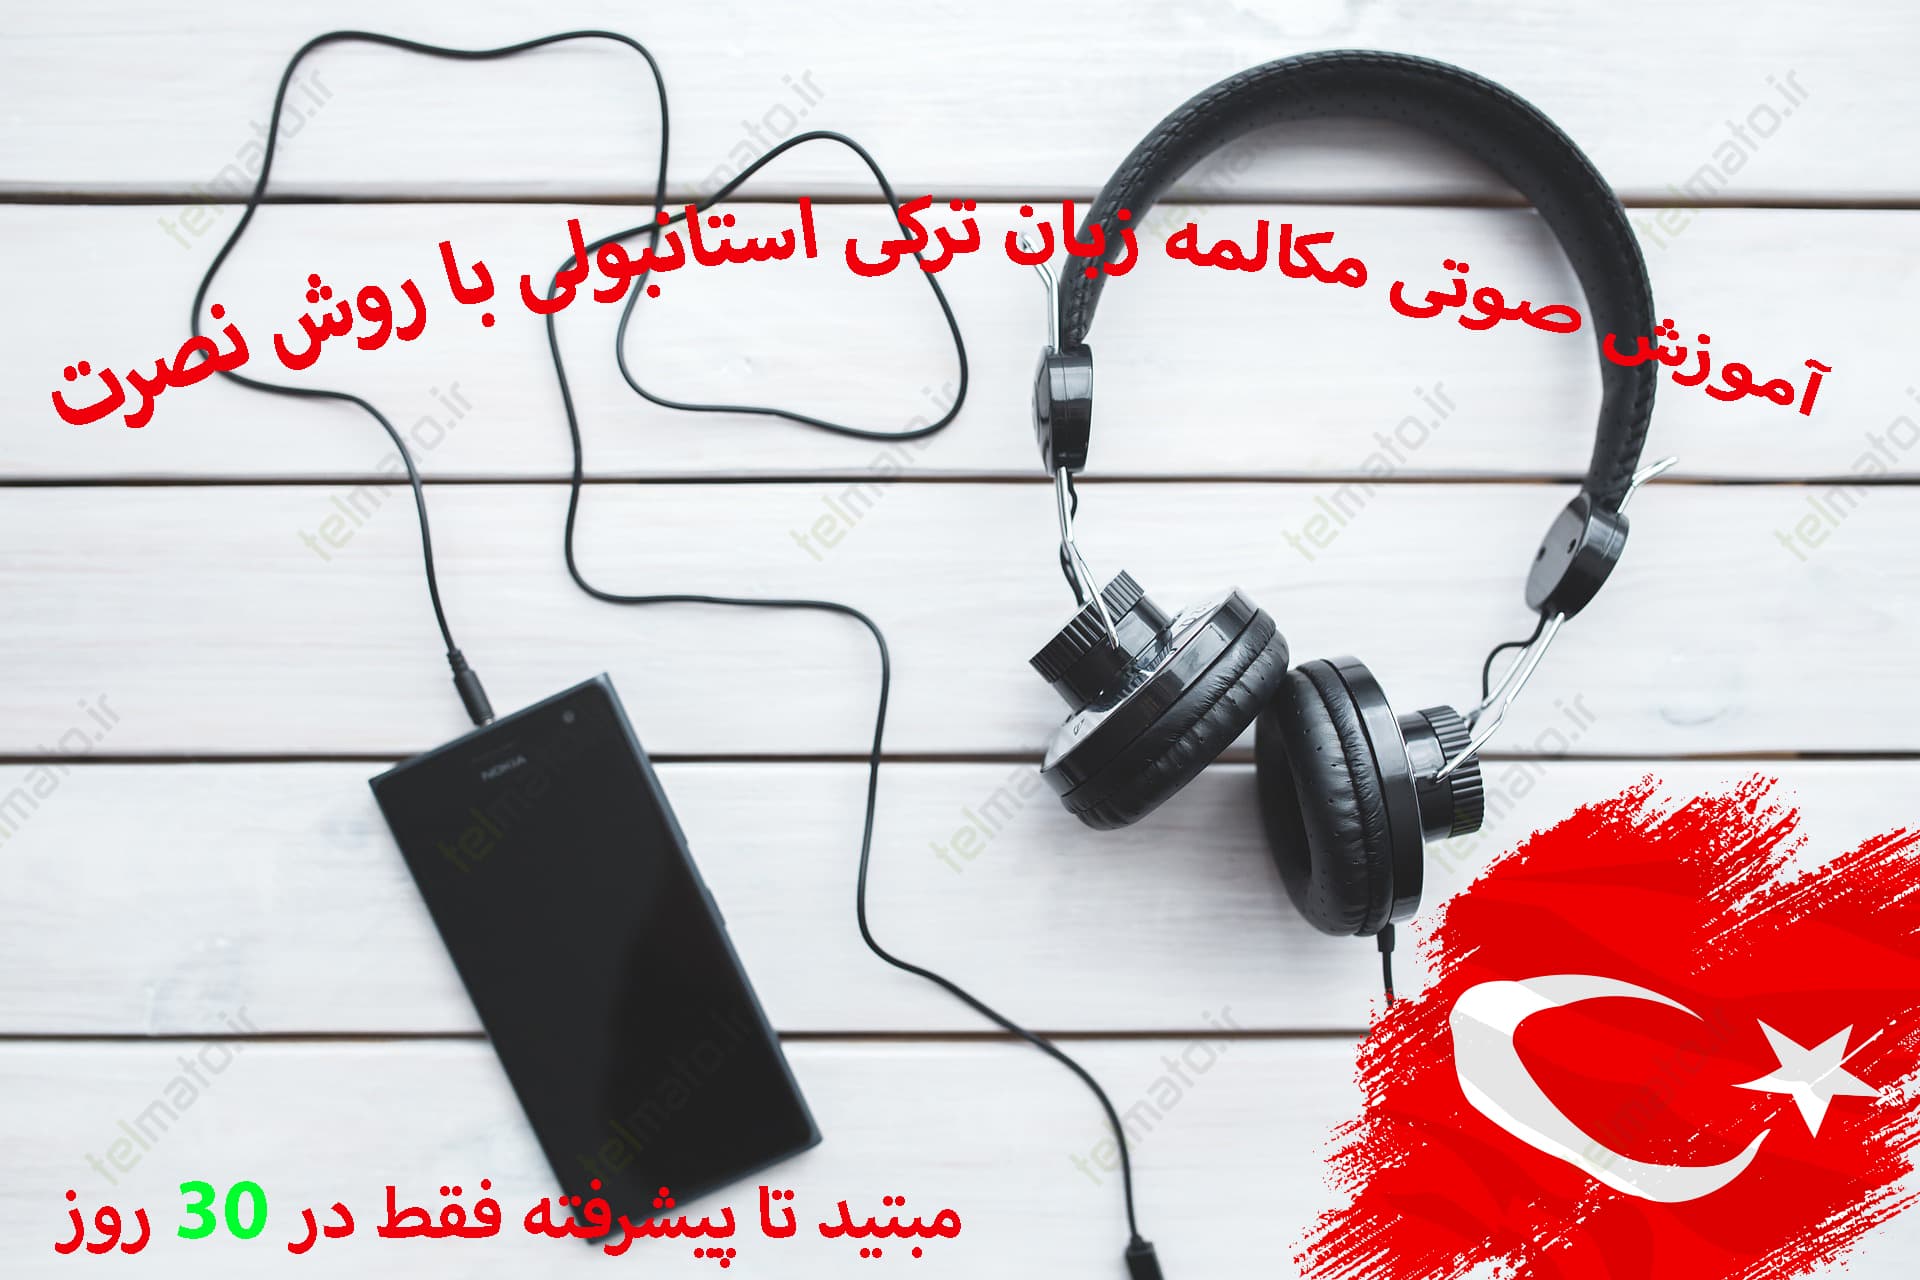 آموزش صوتی پایه تا پیشرفته زبان ترکی استانبولی به فارسی در خانه ، محل کار و خودرو فقط در 30 روز برای موبایل گوشی اندروید و ios 